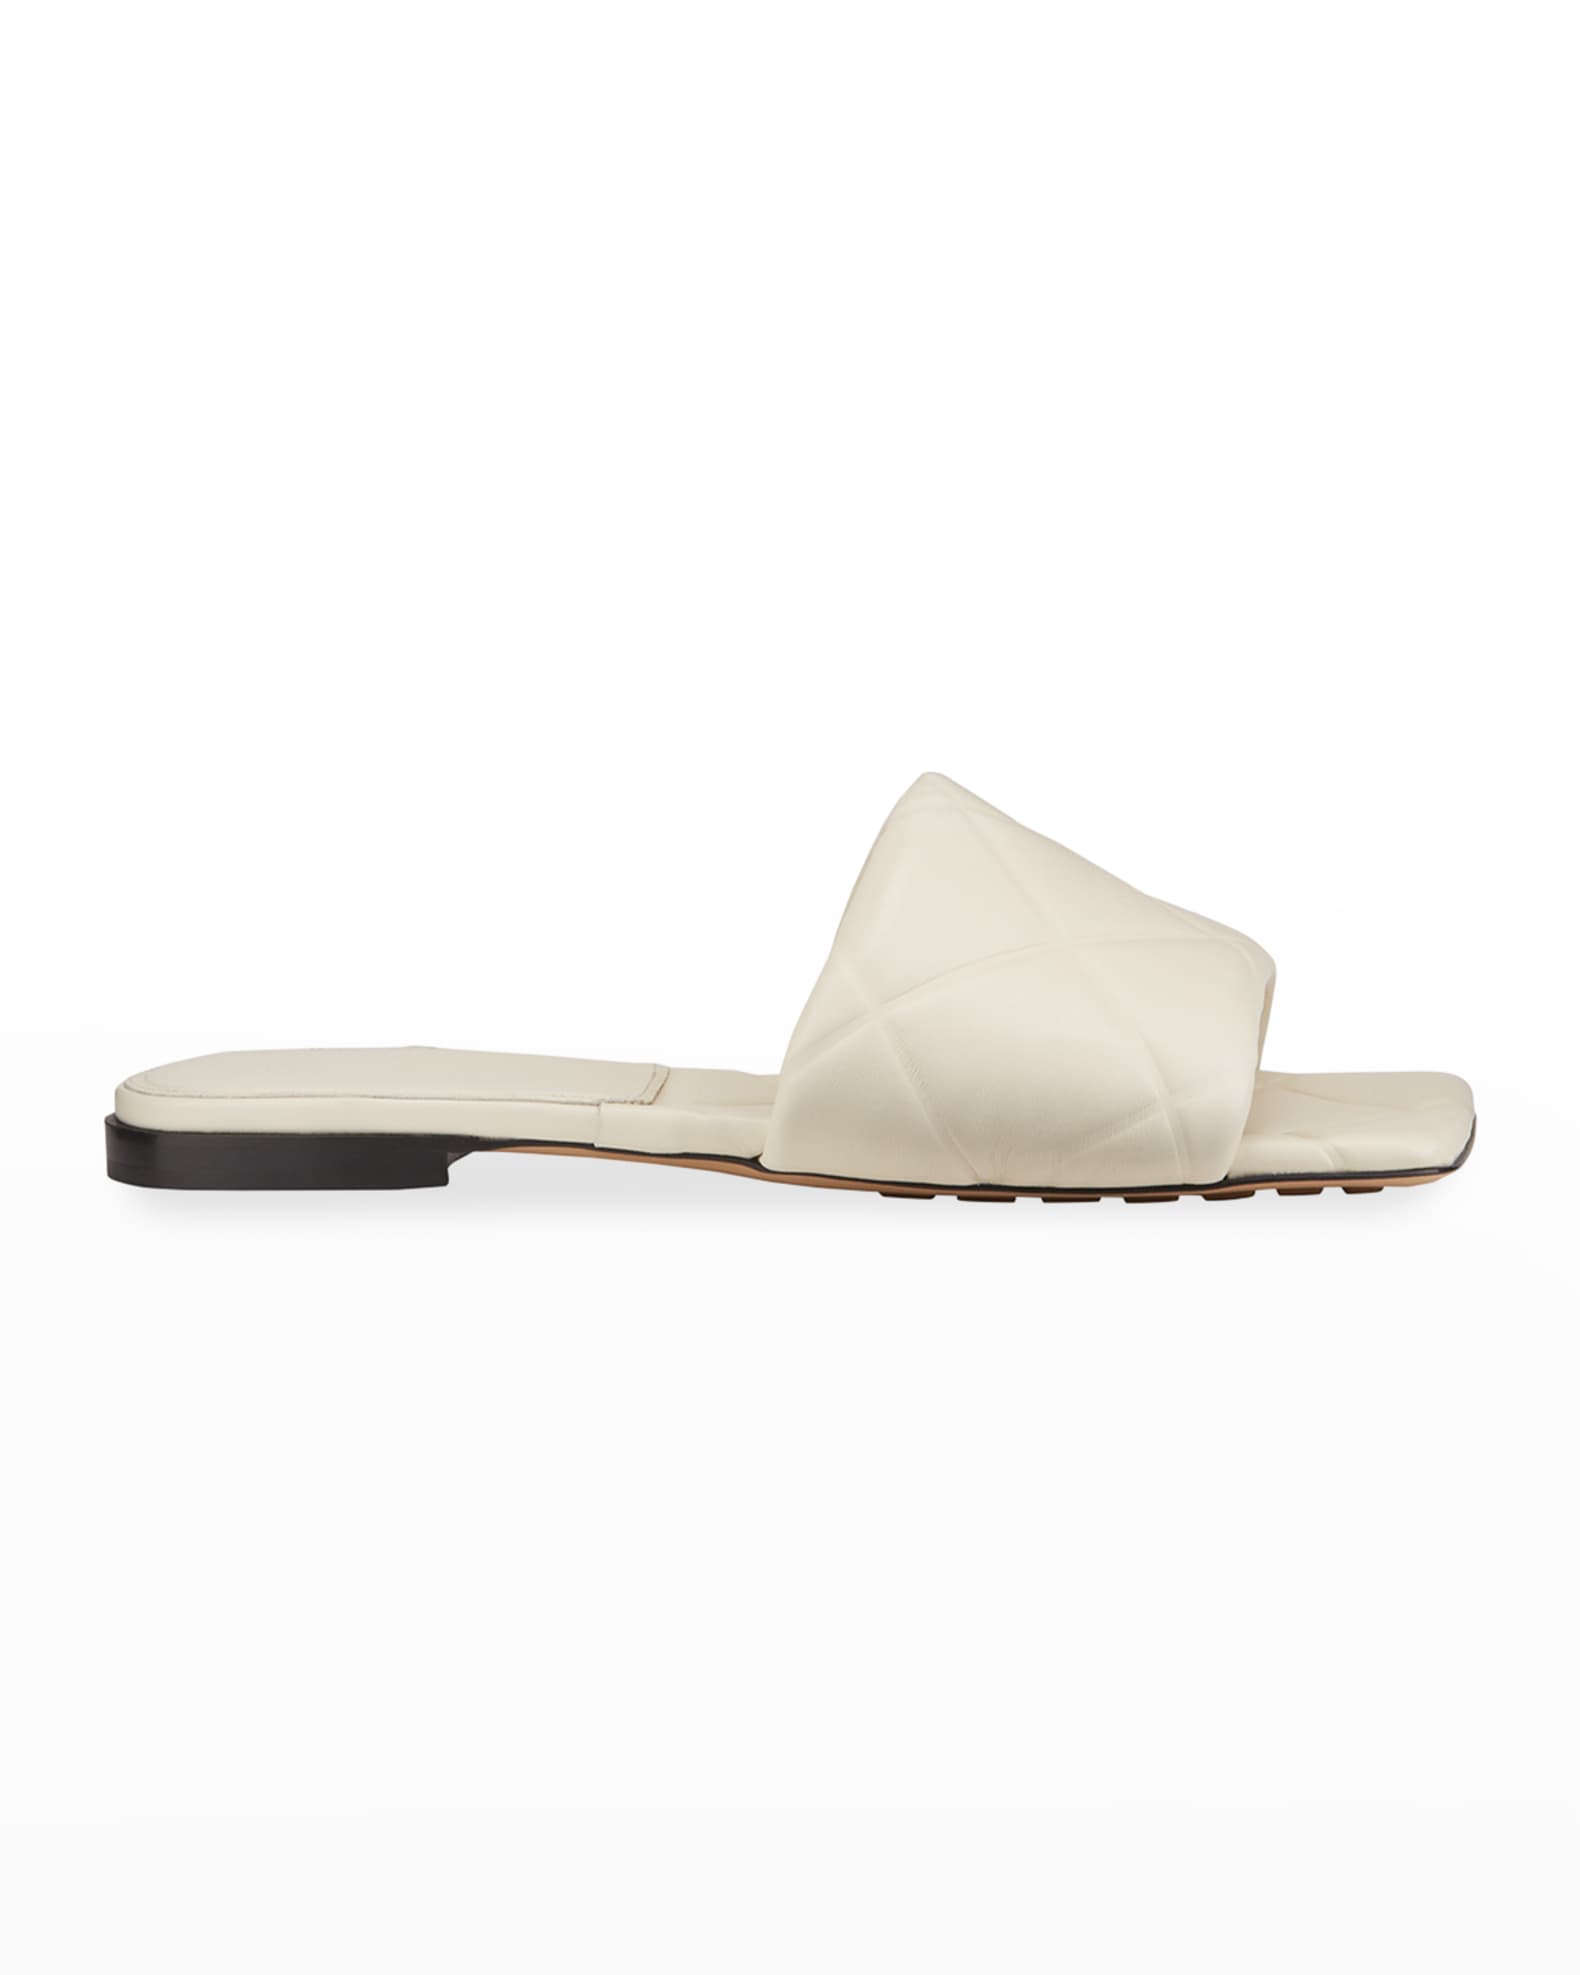 Bottega Veneta The Rubber Lido Flat Sandals | Neiman Marcus